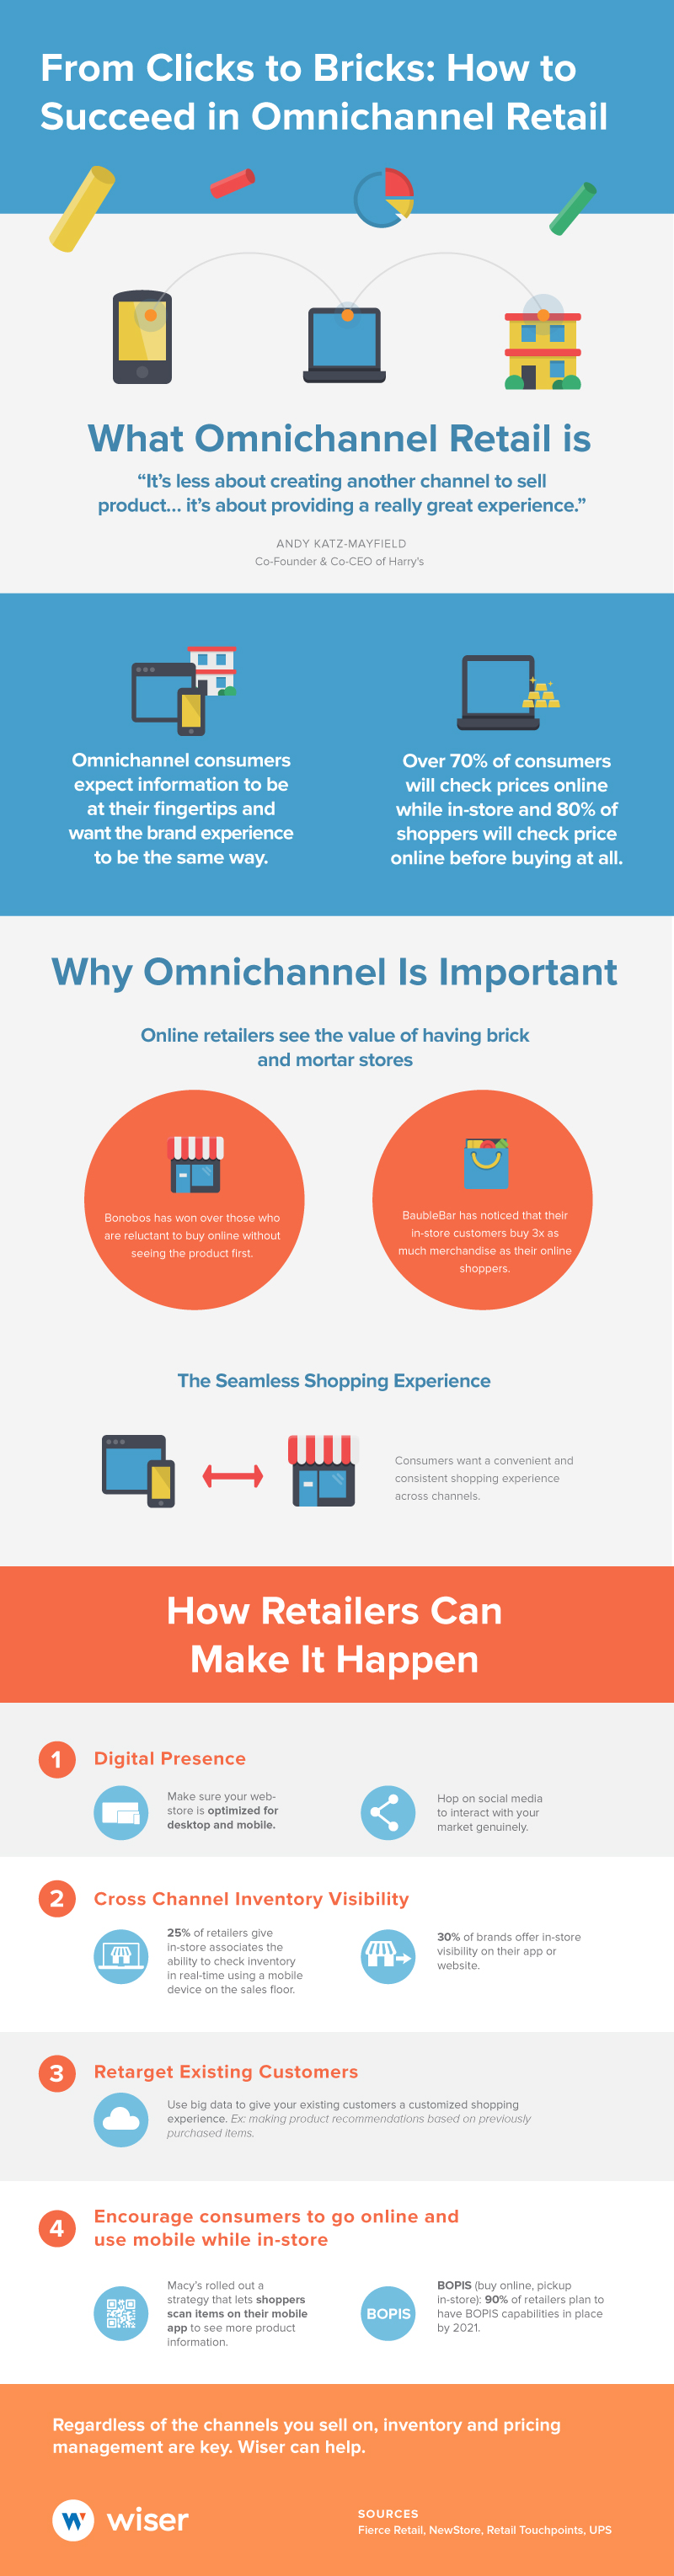 Wiser's omnichannel retail infographic